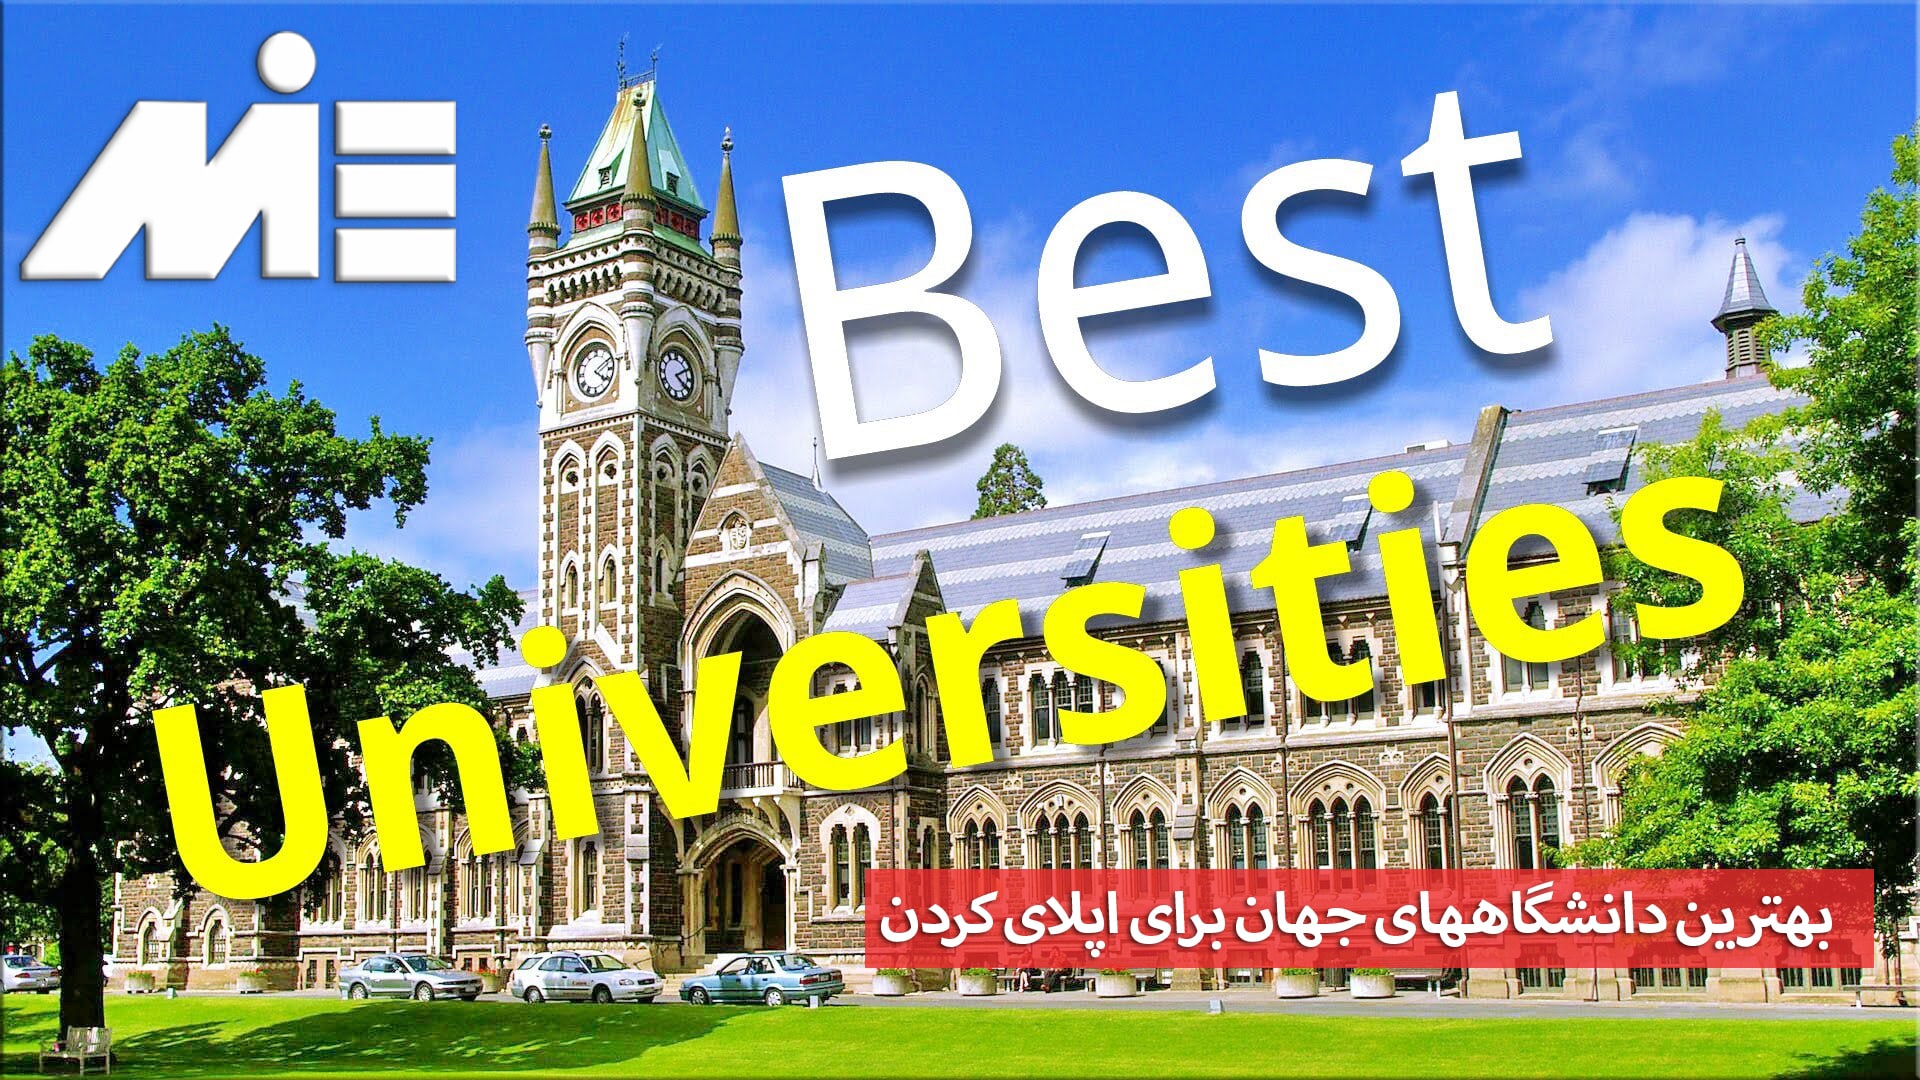 بهترین دانشگاههای جهان - بهترین دانشگاههای خارجی برای تحصیل - بهترین دانشگاهها برای اپلای